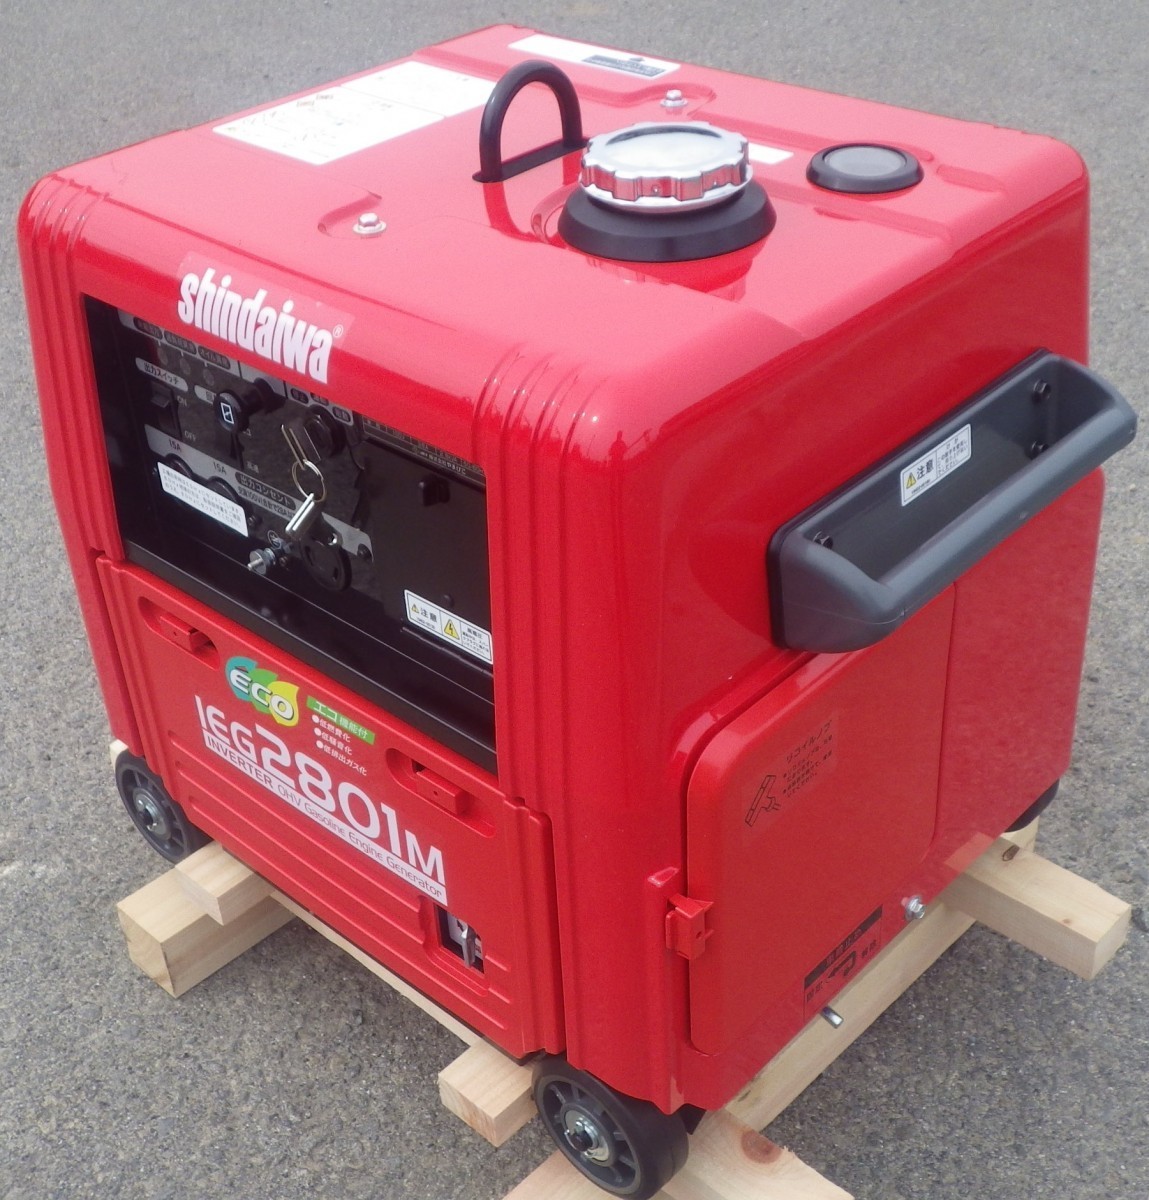  генератор Shindaiwa IEG2801M 2.8kVA инвертер бензин звукоизоляция type 